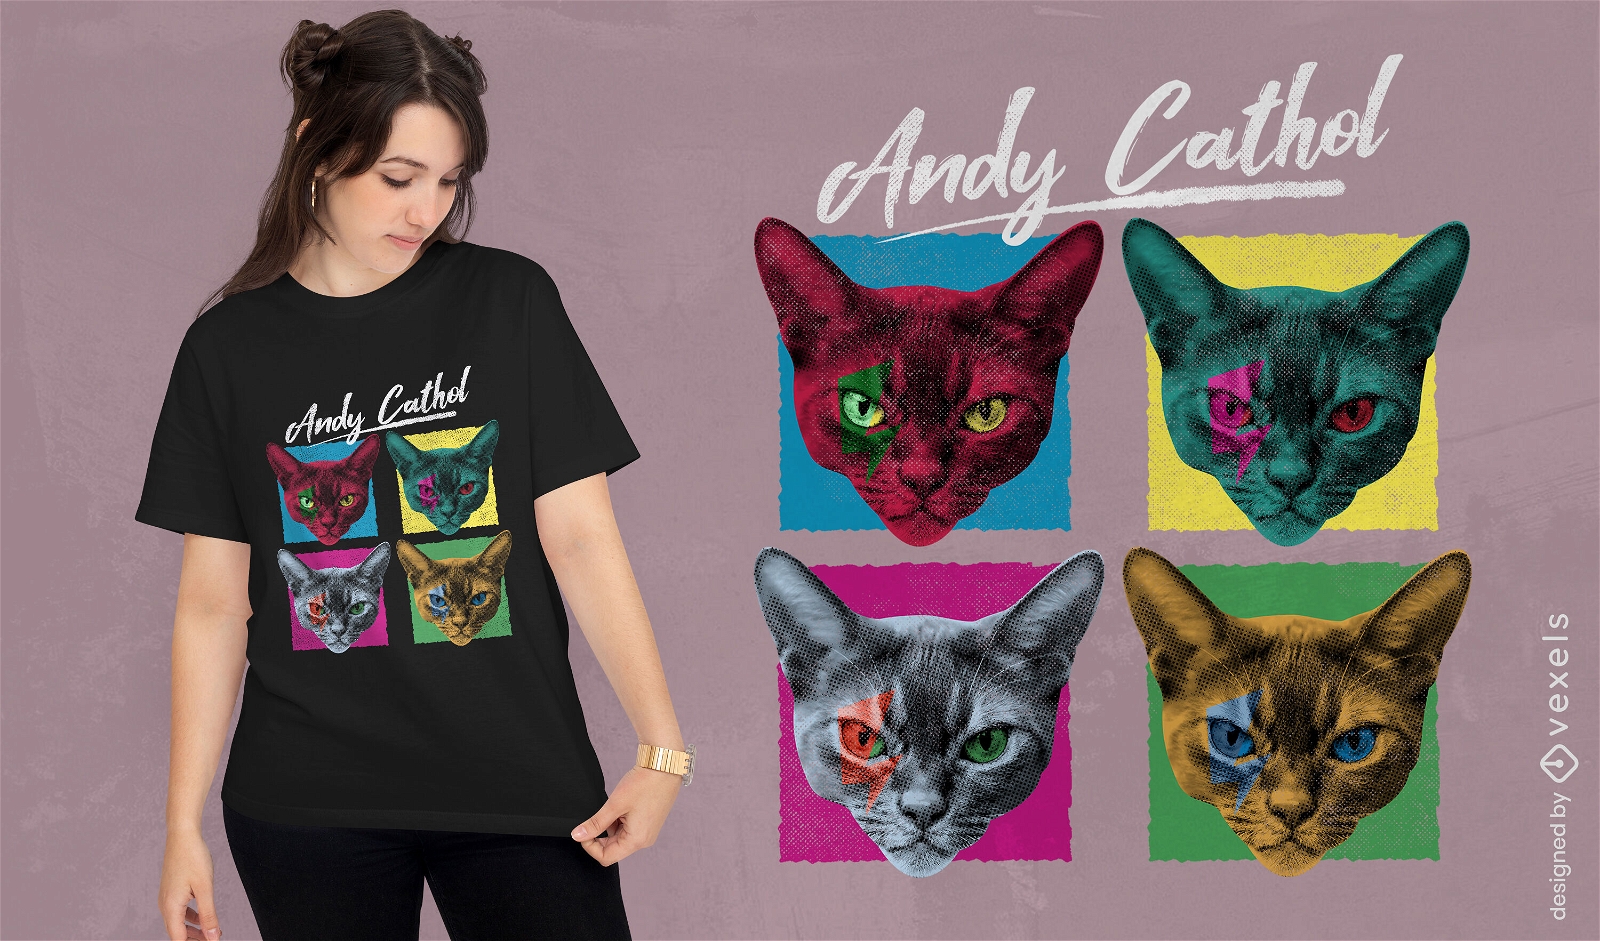 Gatos em camiseta estilo paródia pop art psd